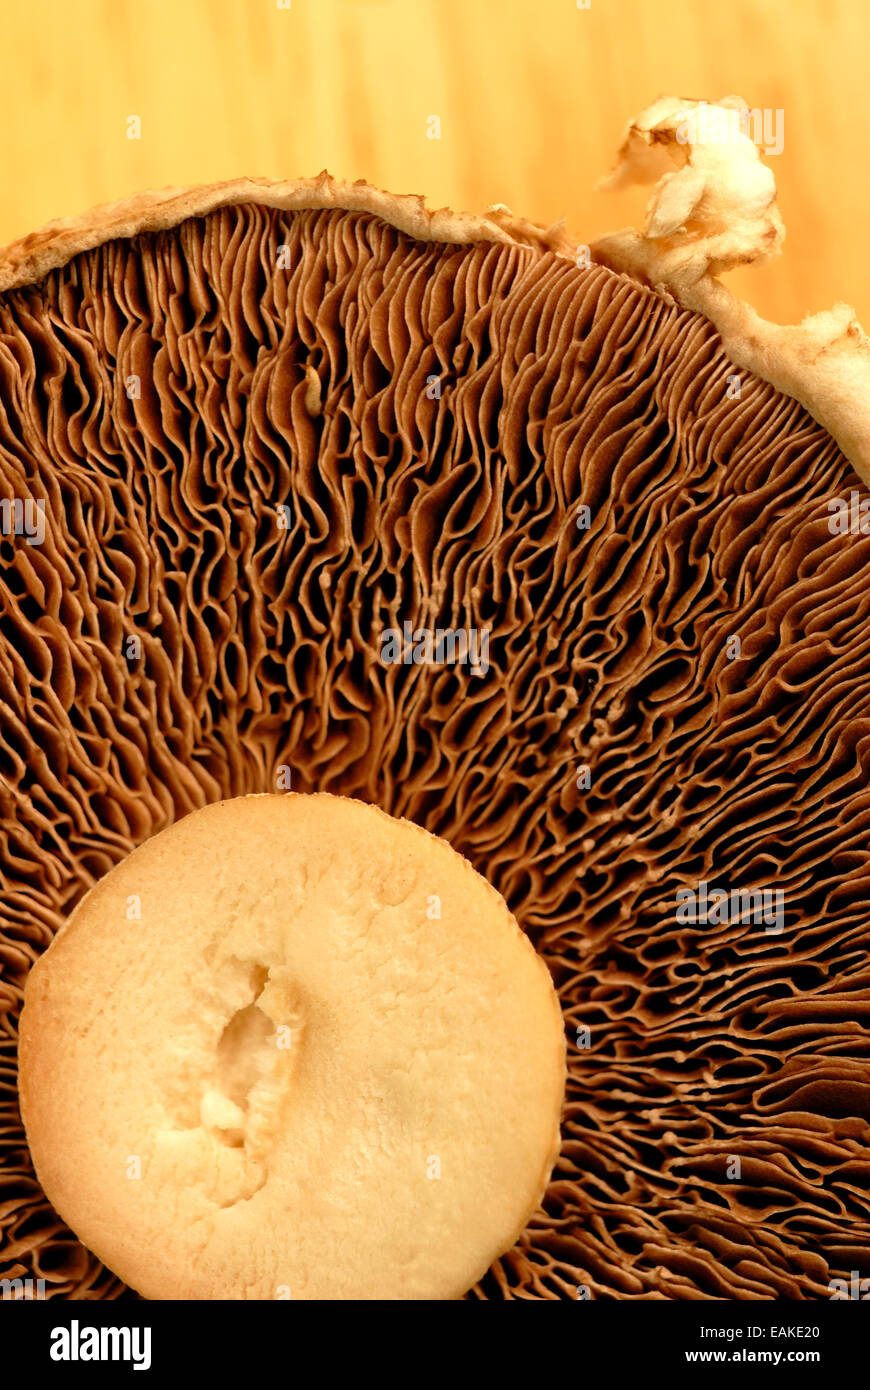 Unterseite eines Feldes Pilz mit Kiemen und Stiel schneiden Stockfoto